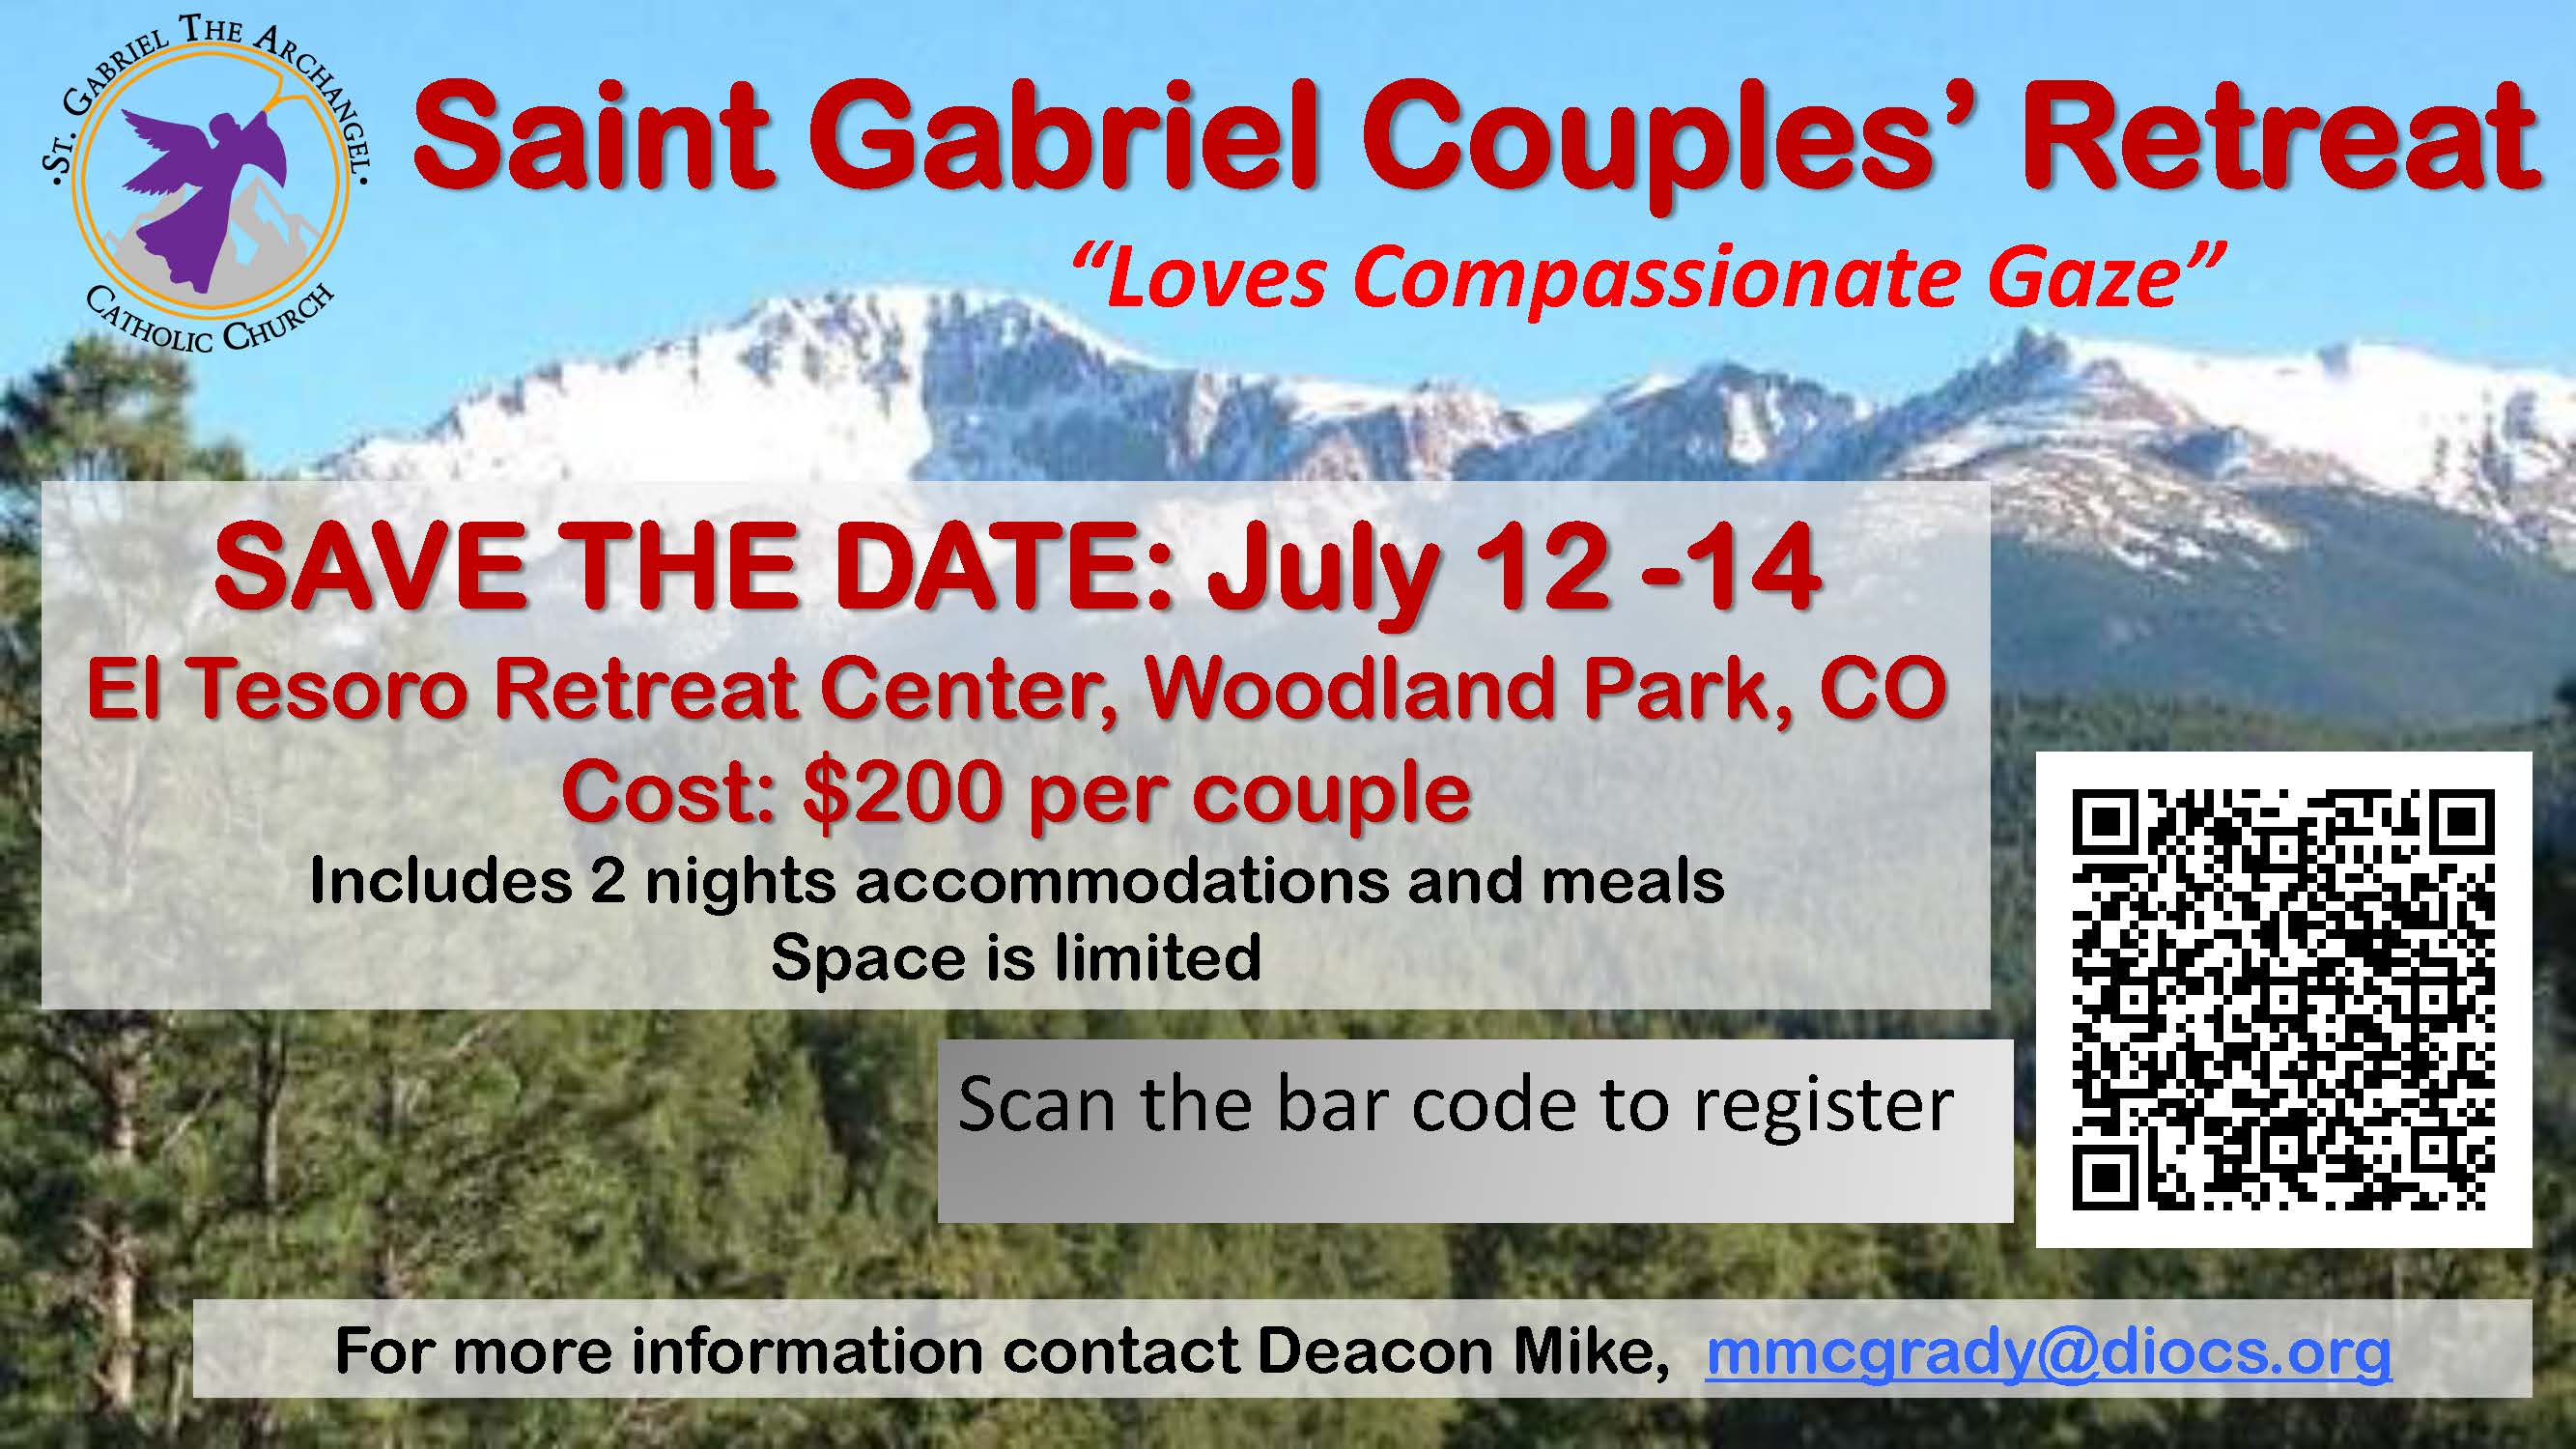 St. Gabriel Couples' Retreat